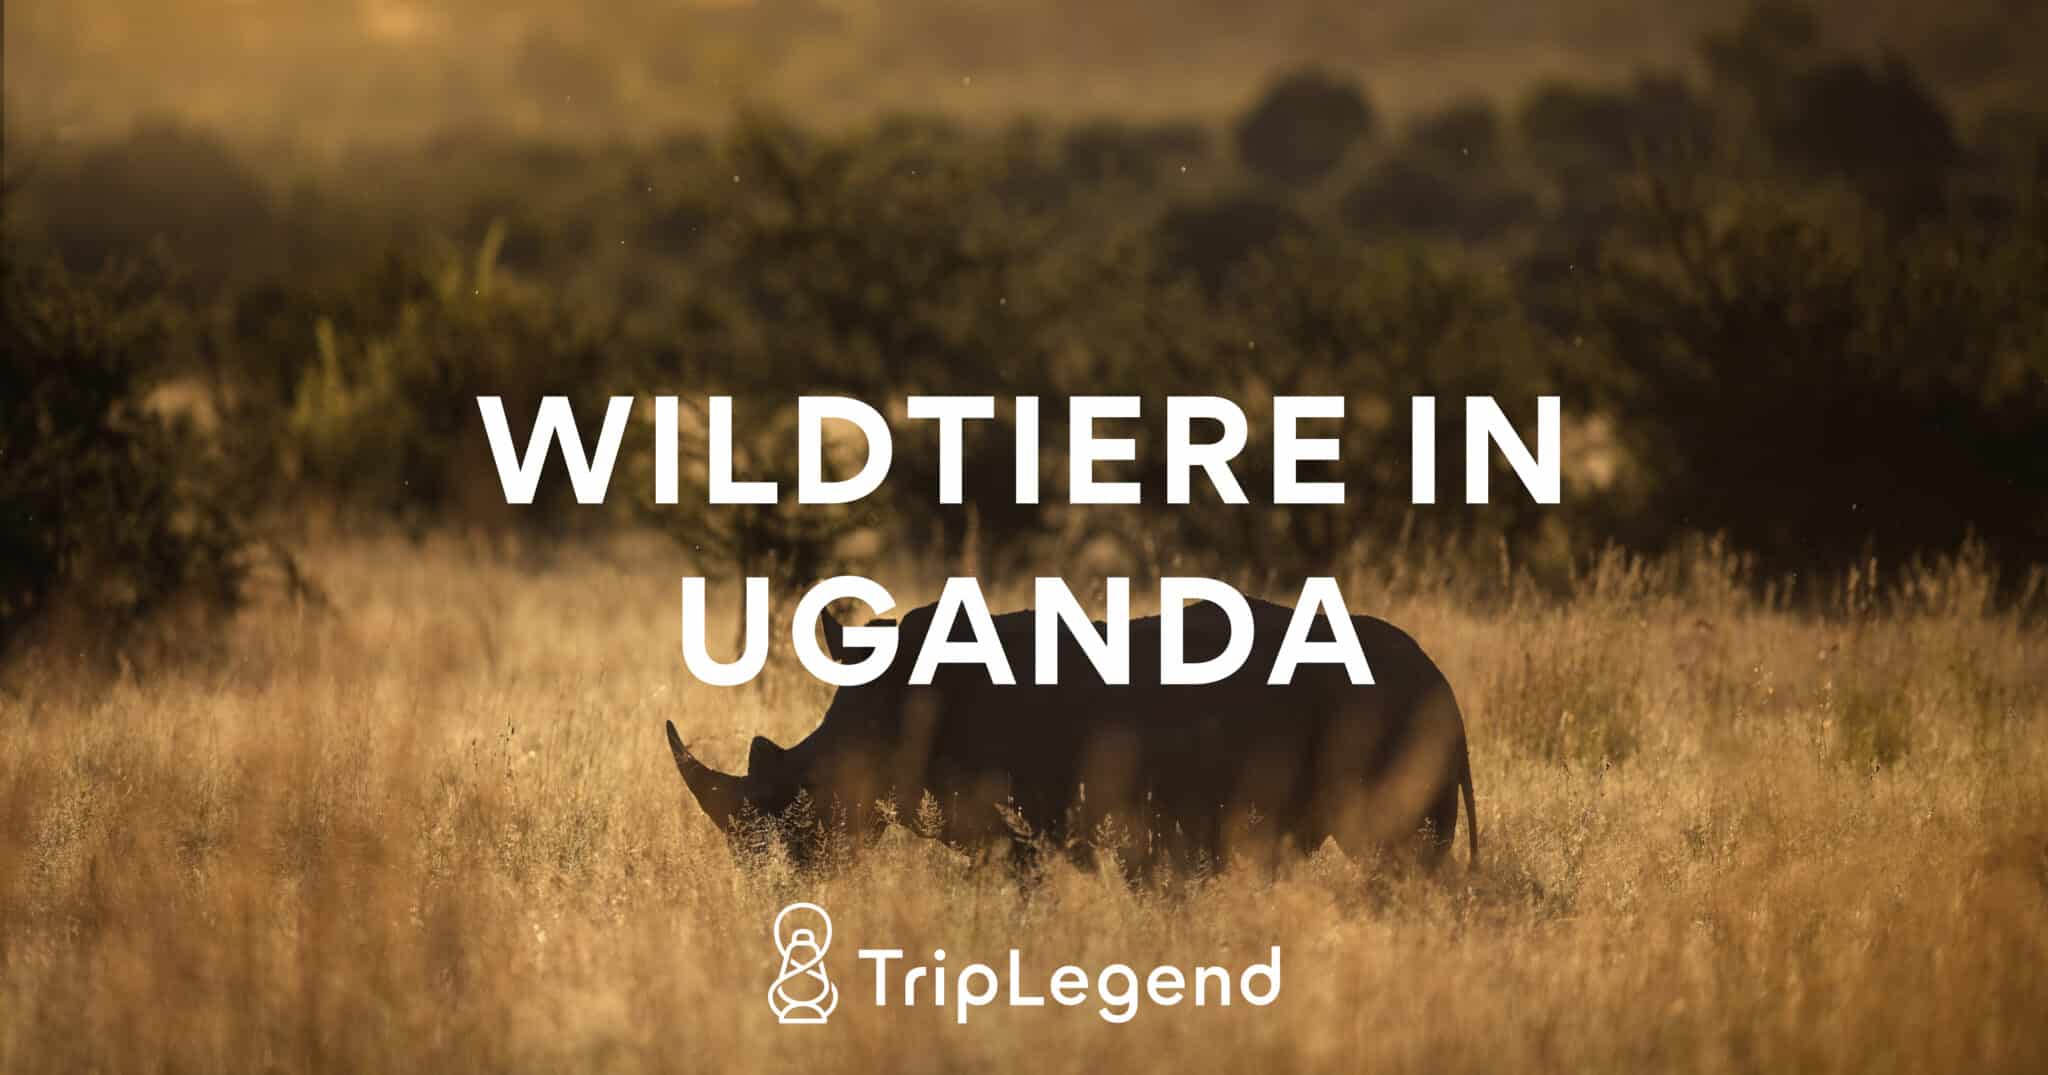 Billedbidrag til artiklen om dyrelivet i Uganda